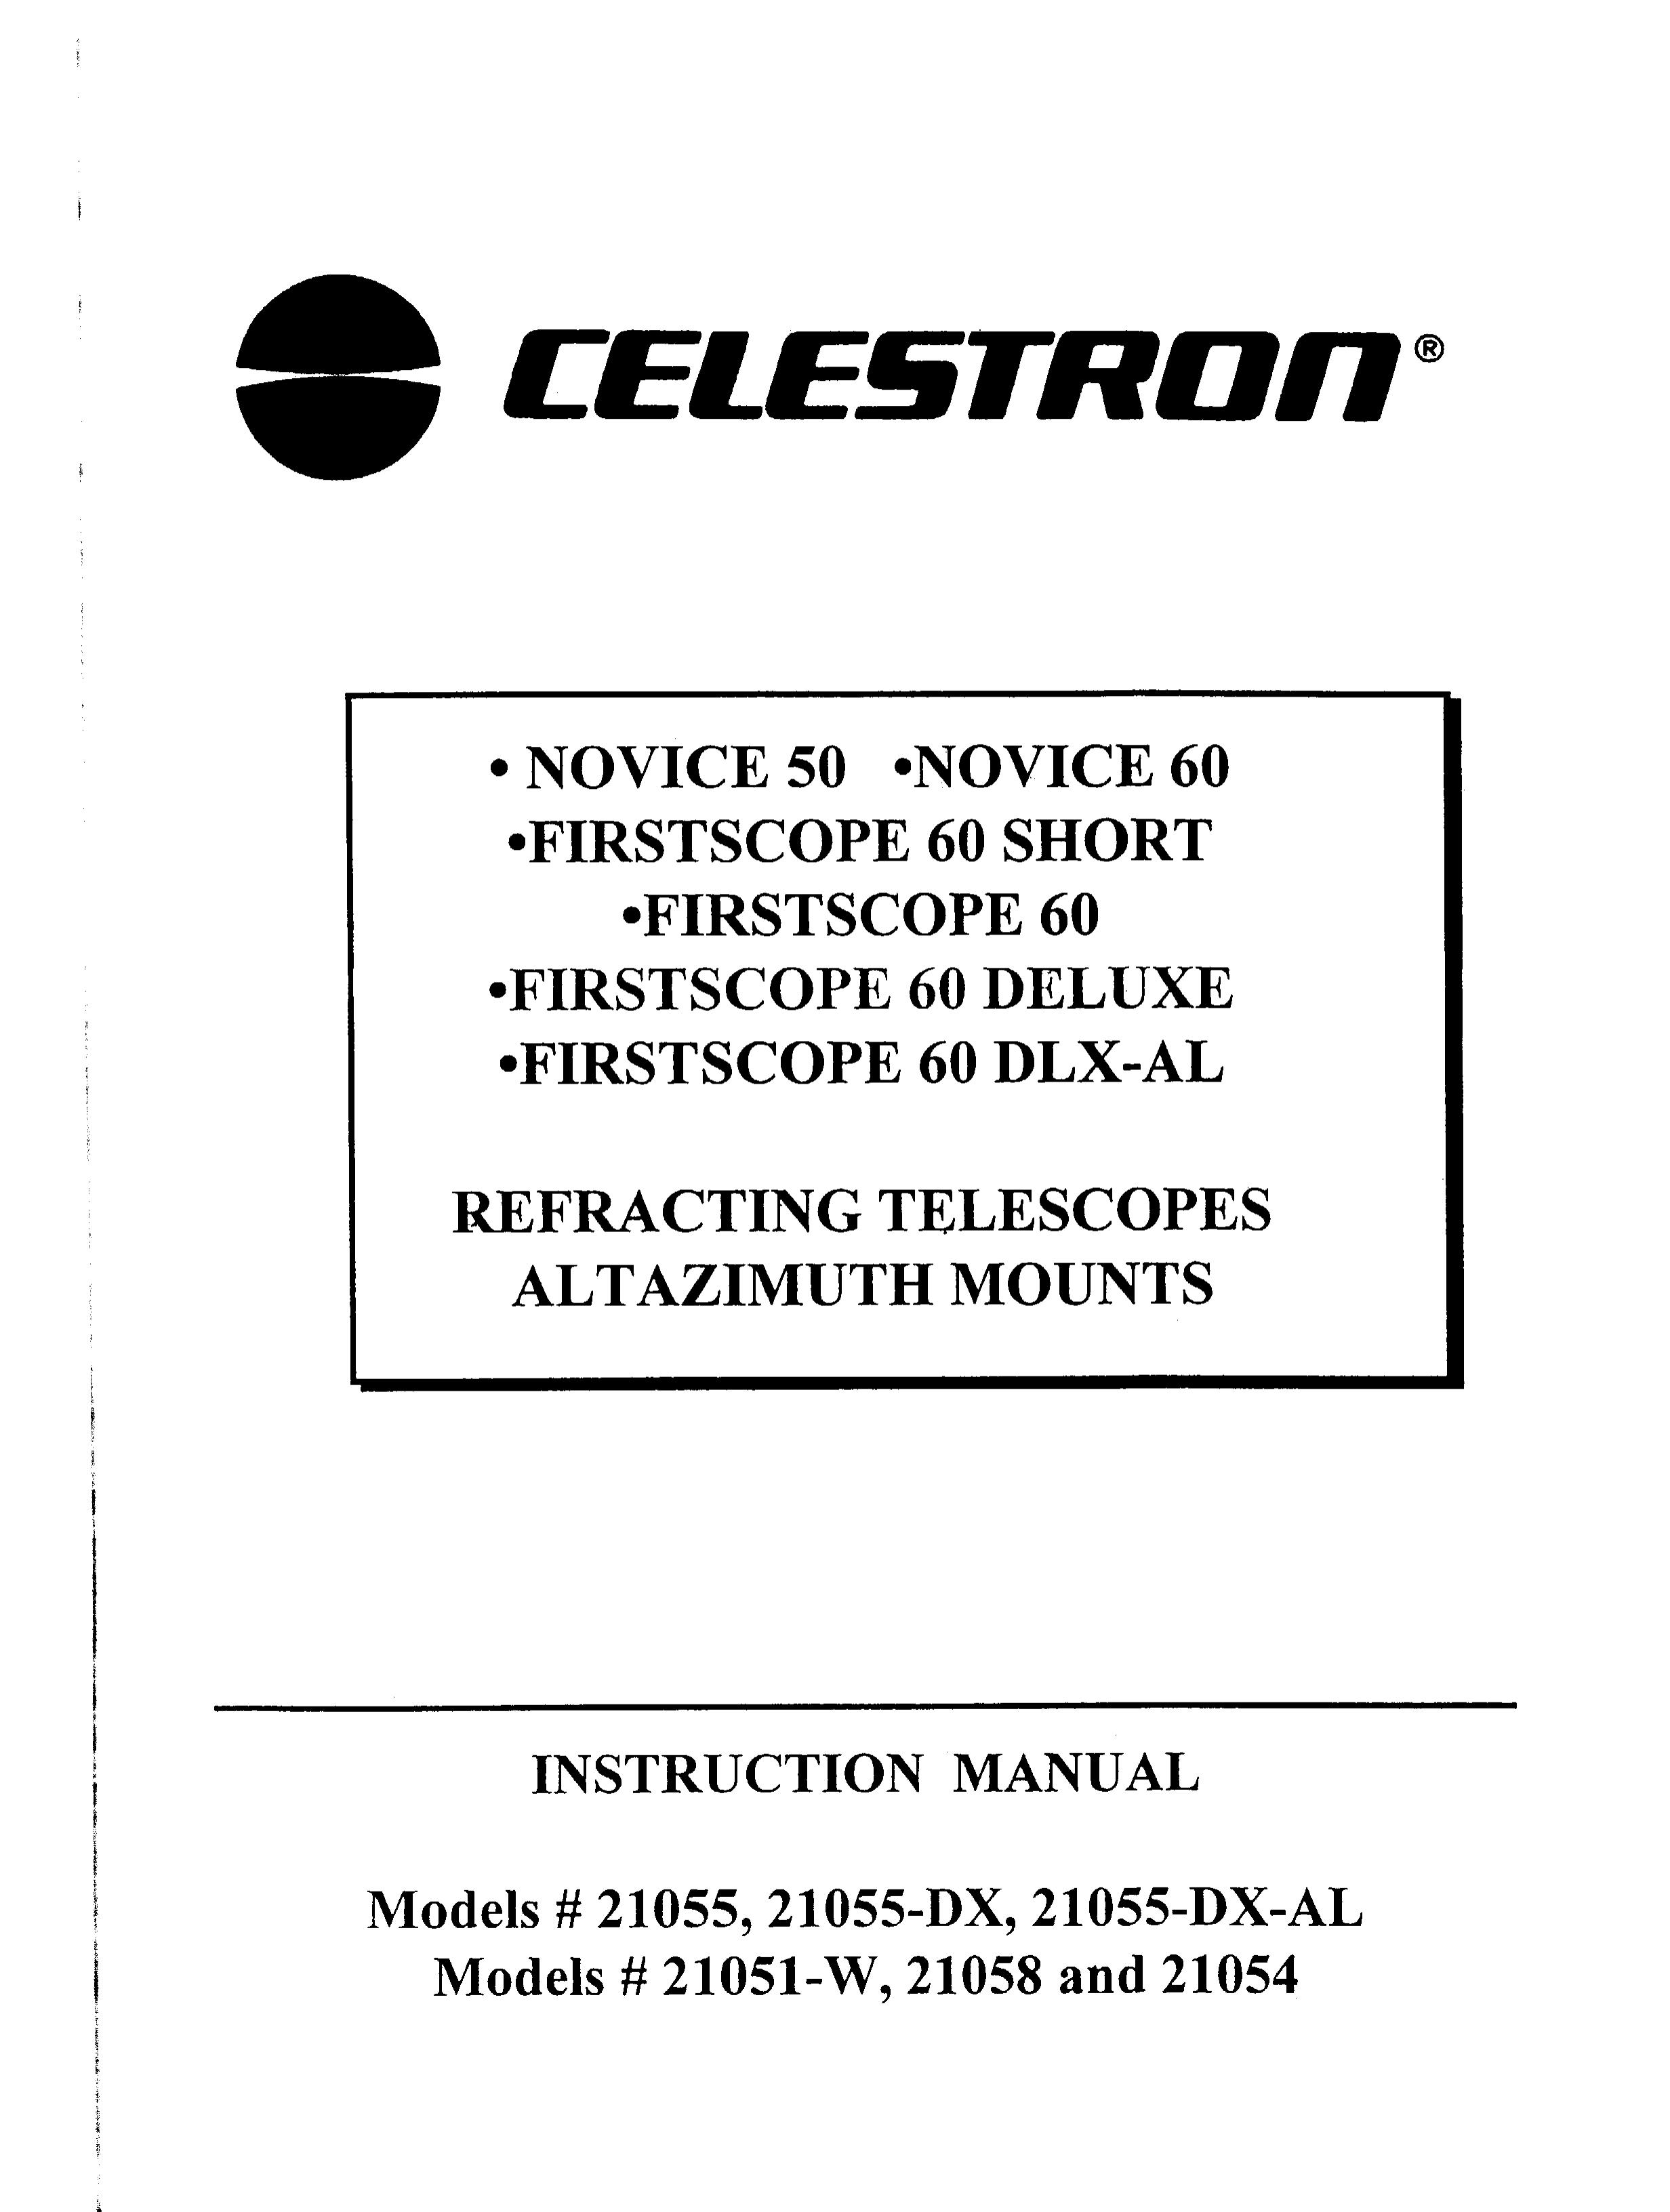 Celestron 21058 Telescope User Manual